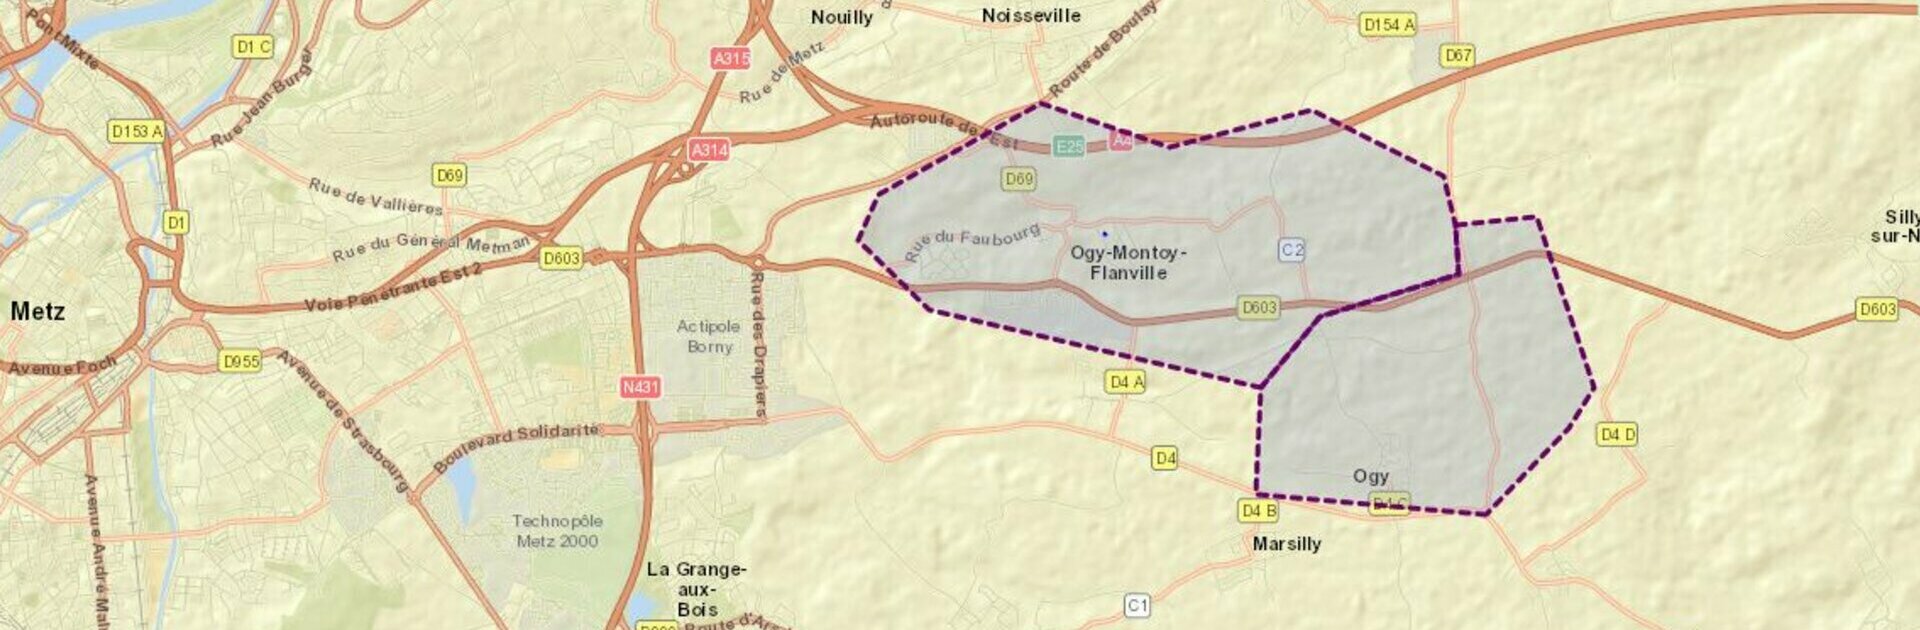 Plan d'accès à Ogy-Montoy-Flanville